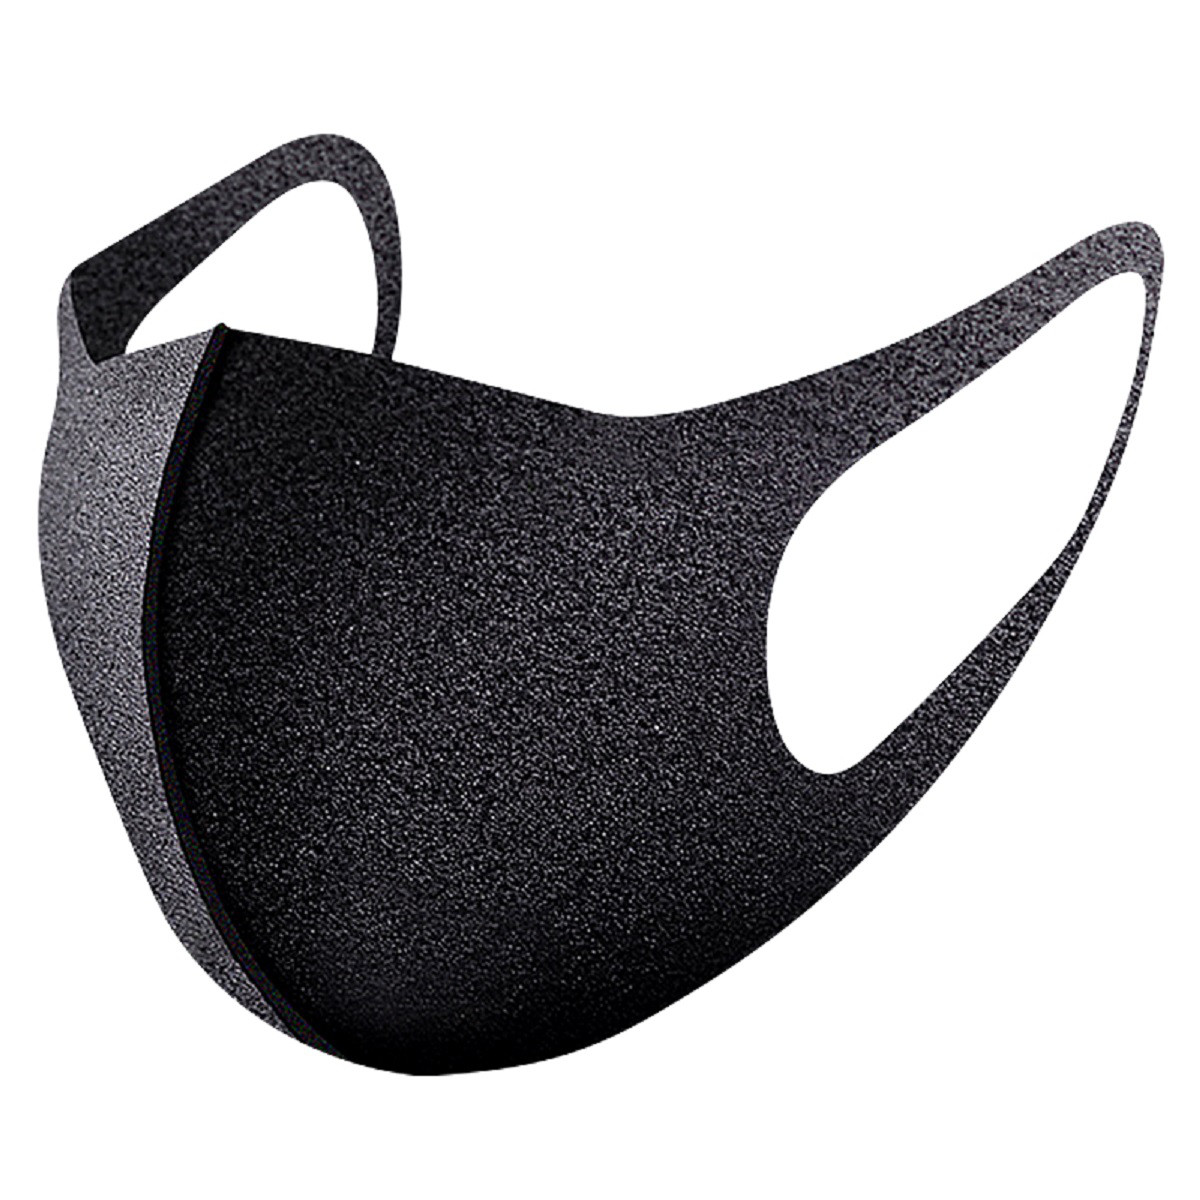 口罩男女通用轻便防尘口罩(三枚装) 黑色透气可清洗易呼吸口罩